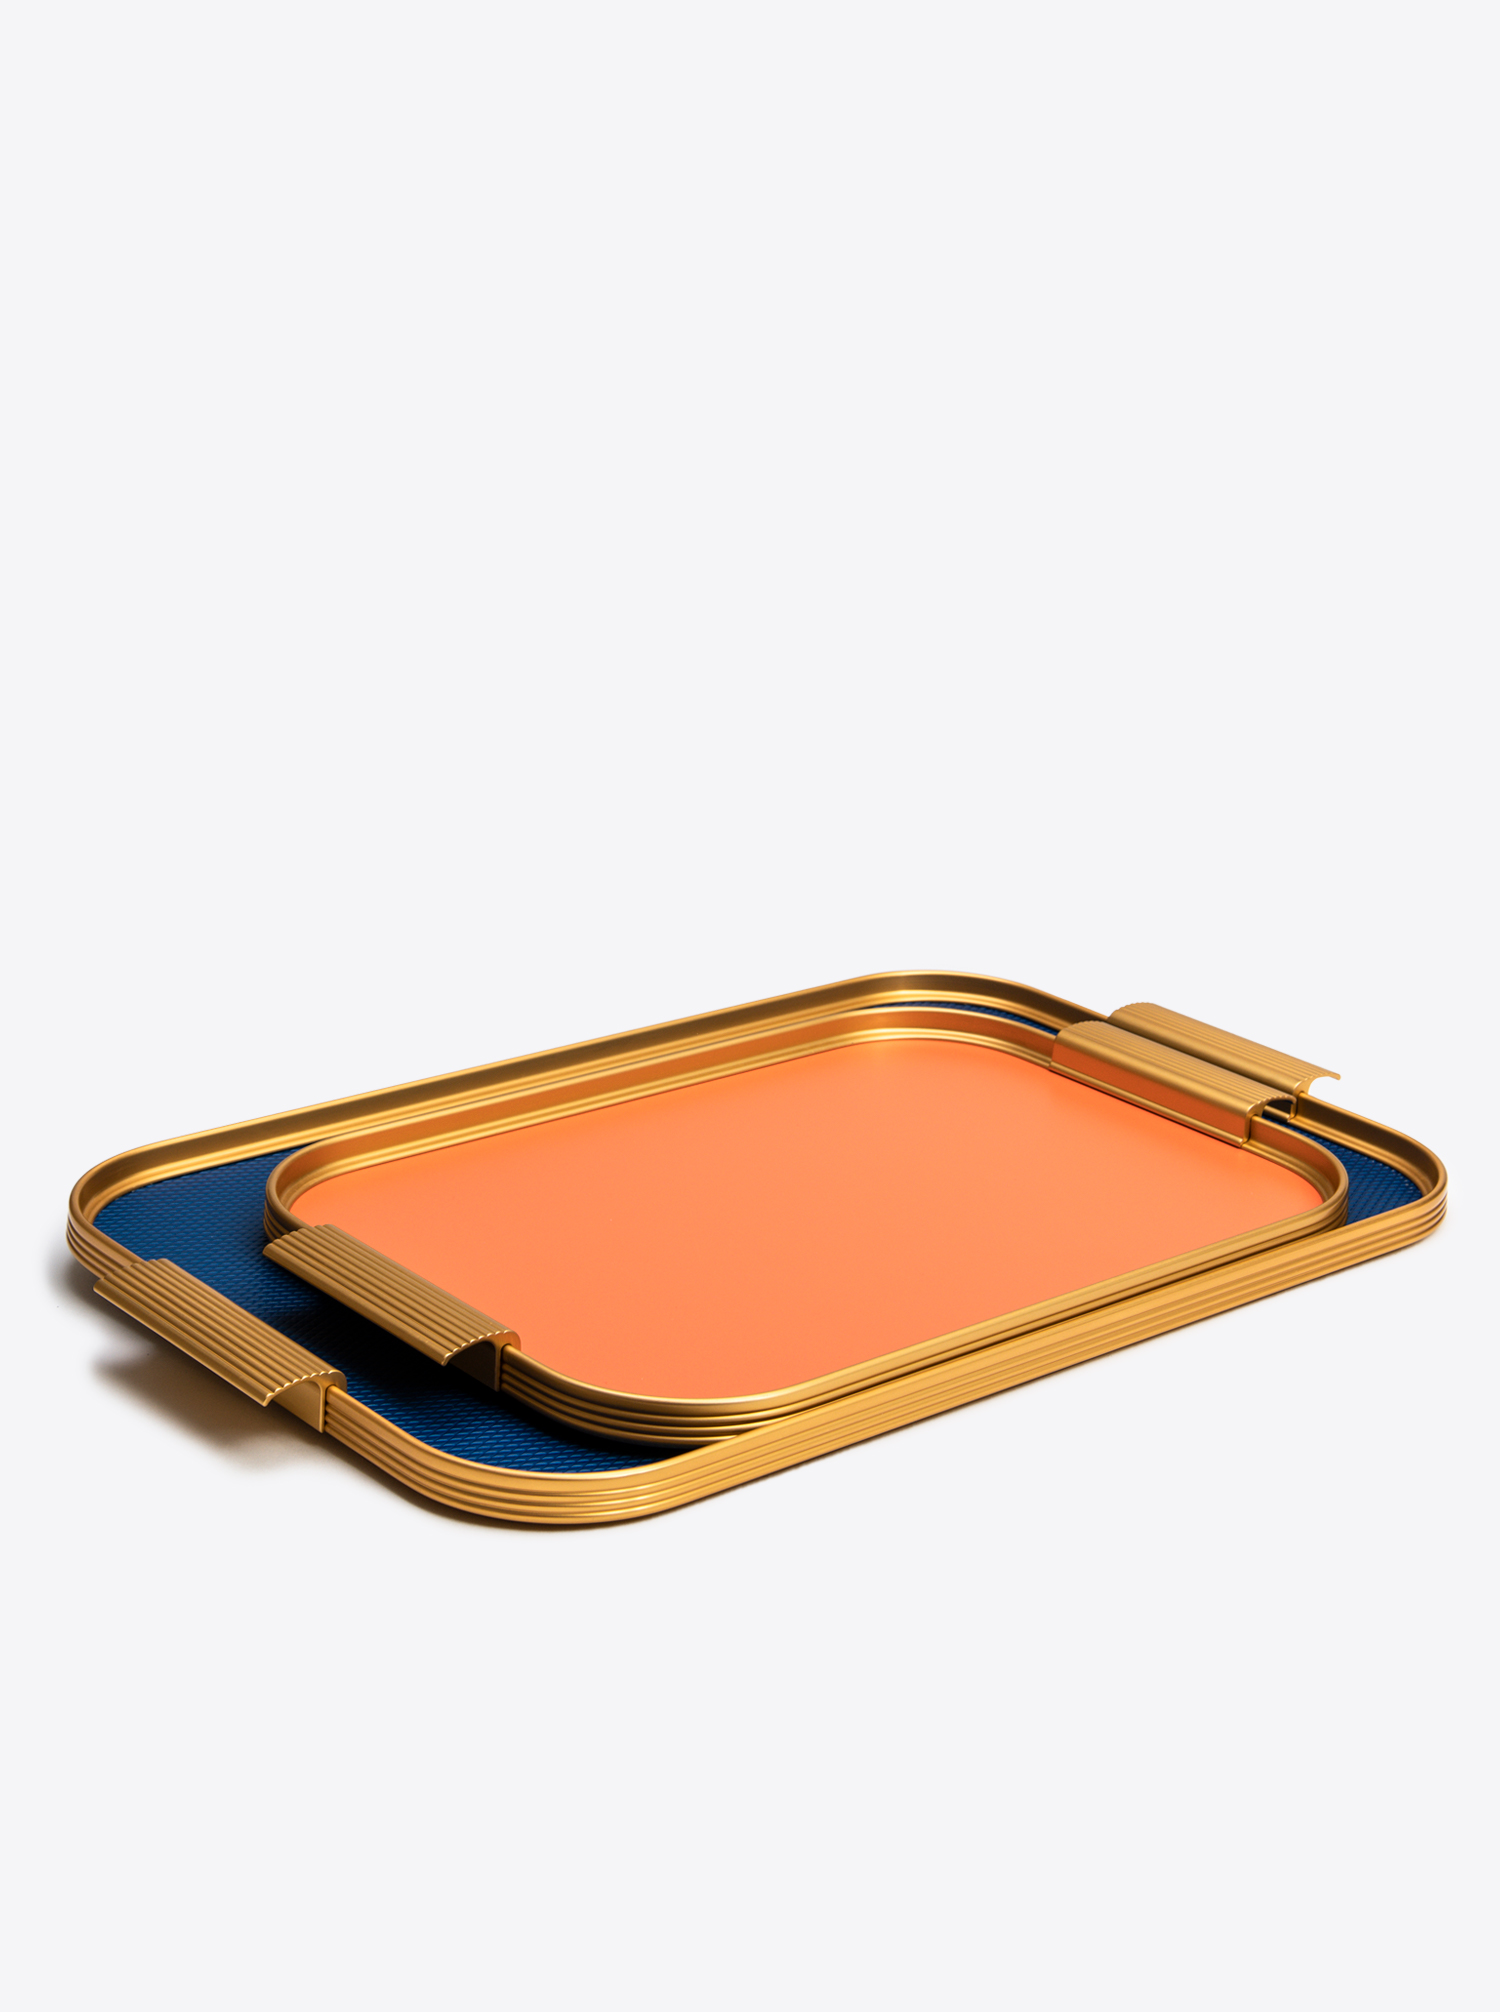 Tray Aluminium M 35 x 25,5cm in Burnt Orange / Gold